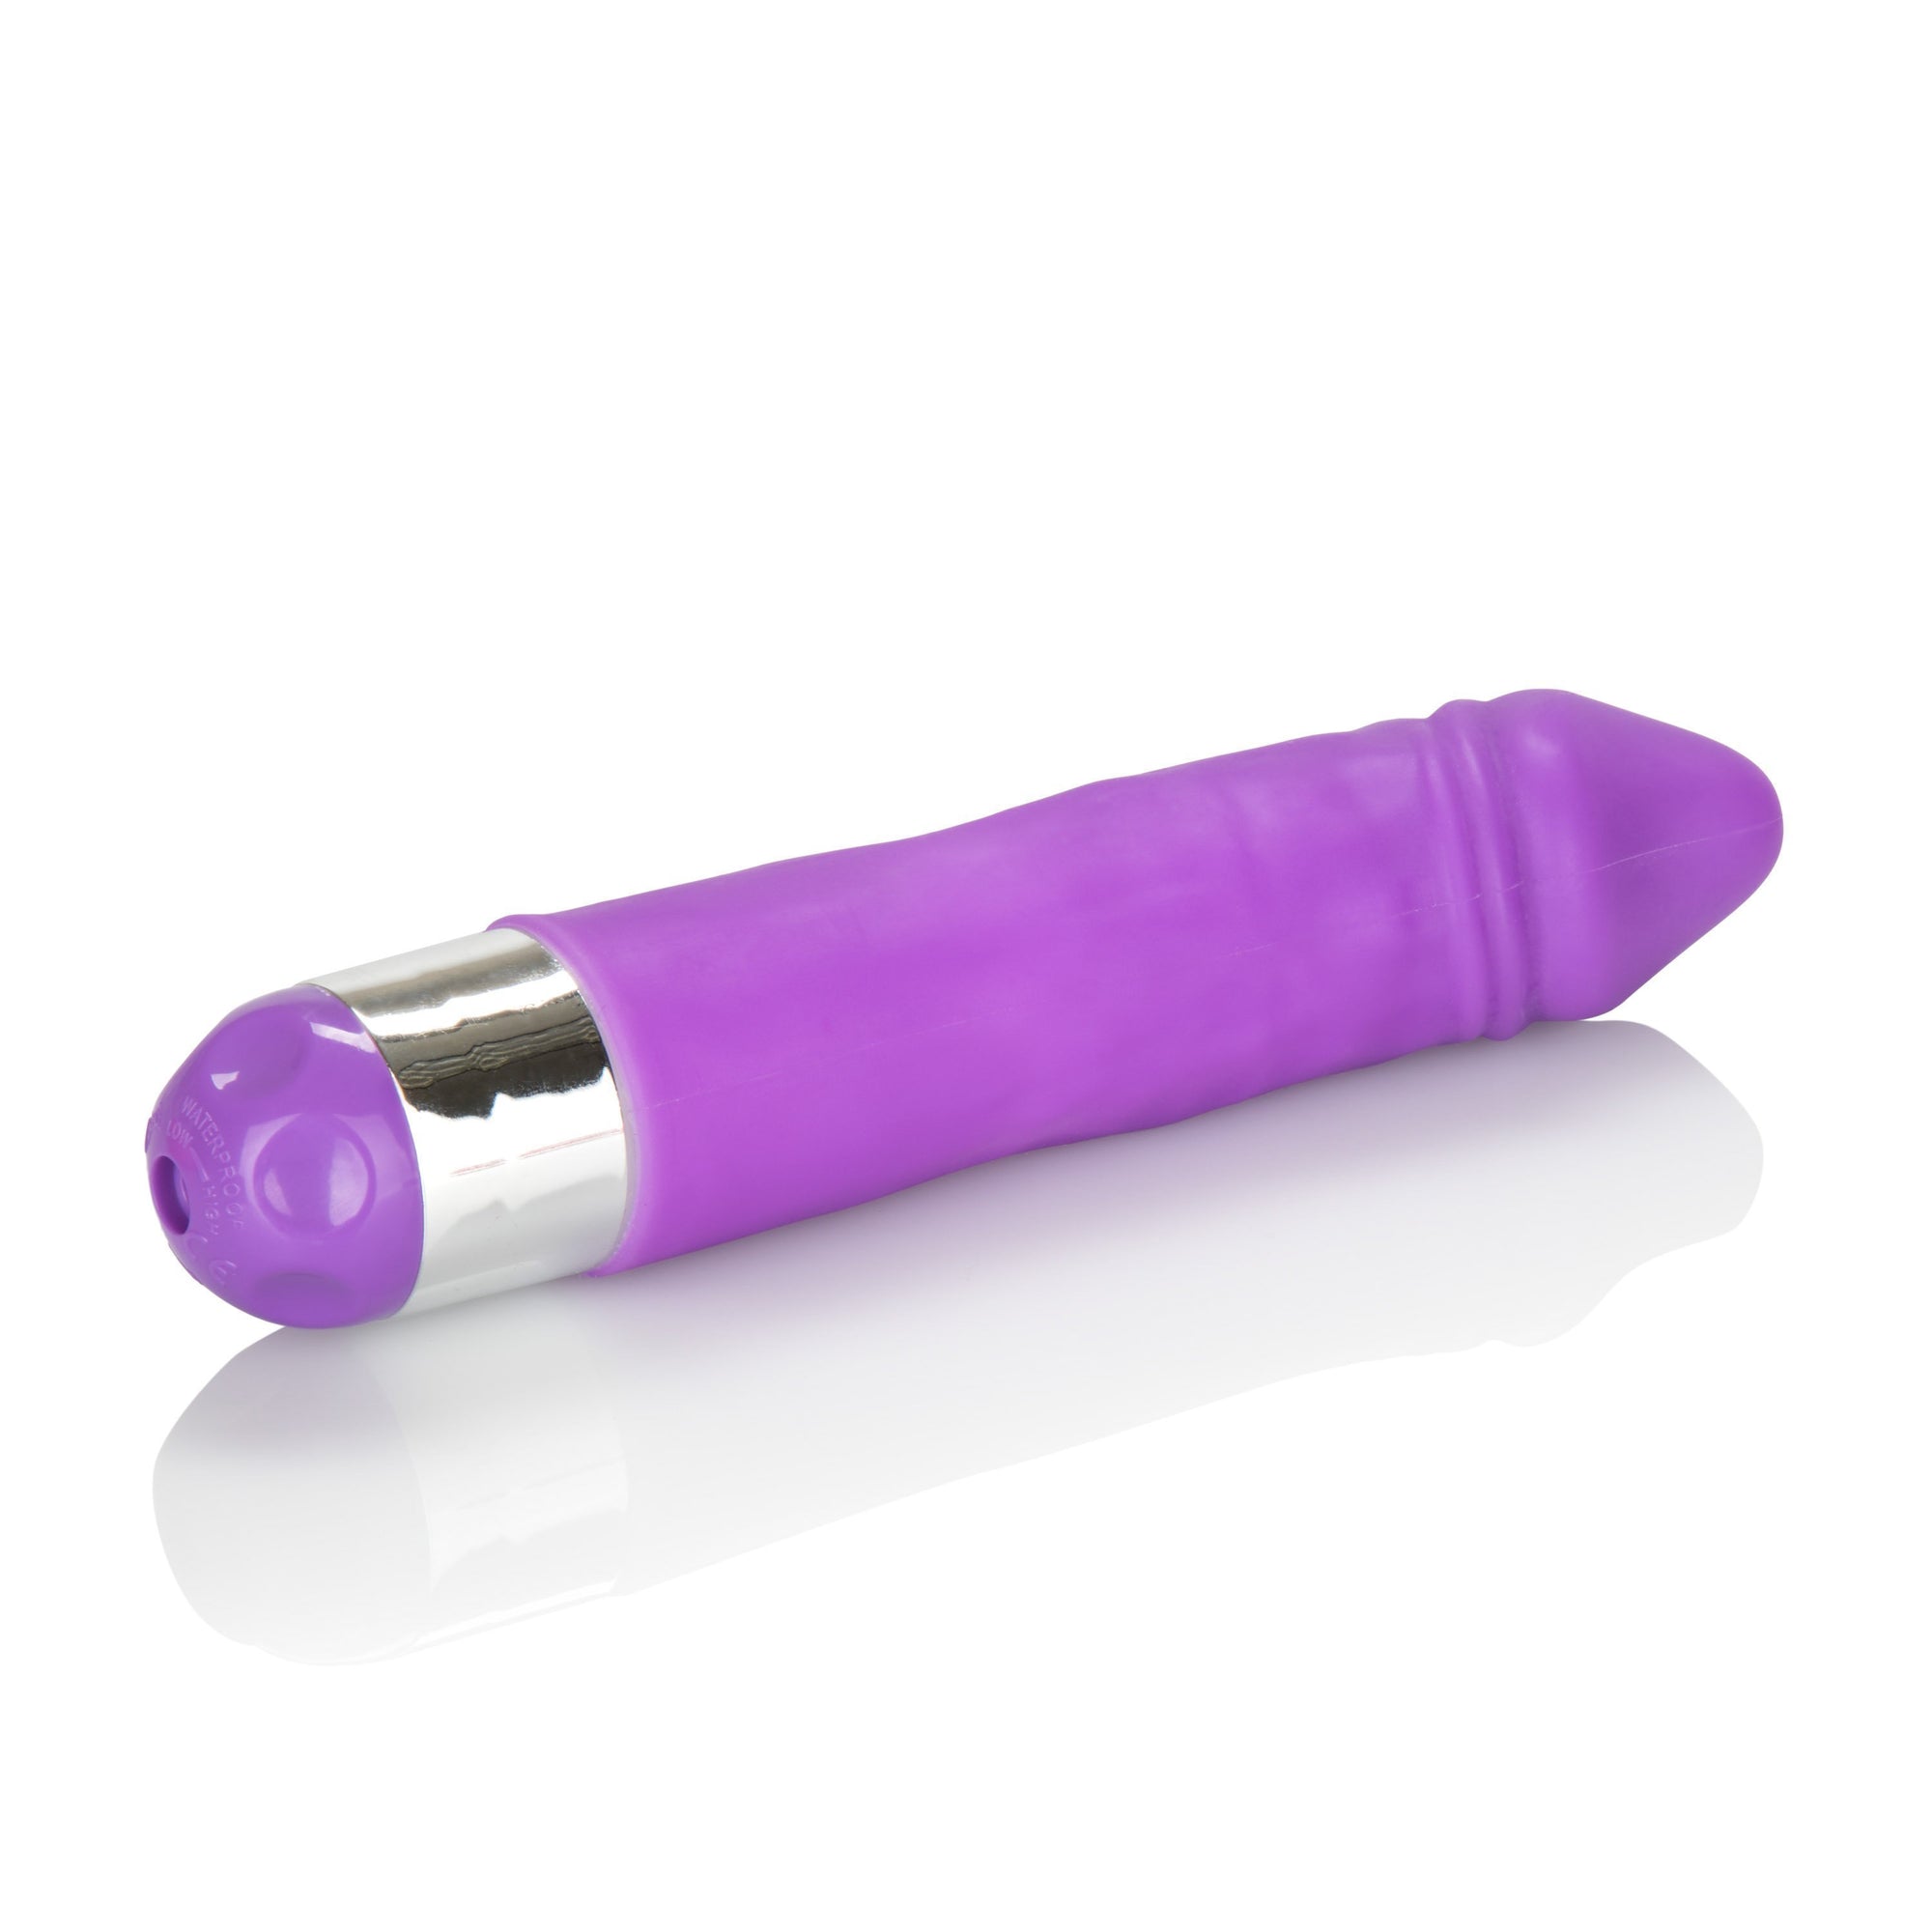 California Exotics - Shane's World Silicone Buddy Vibrator (Purple) Non Realistic Dildo w/o suction cup (Vibration) Non Rechargeable